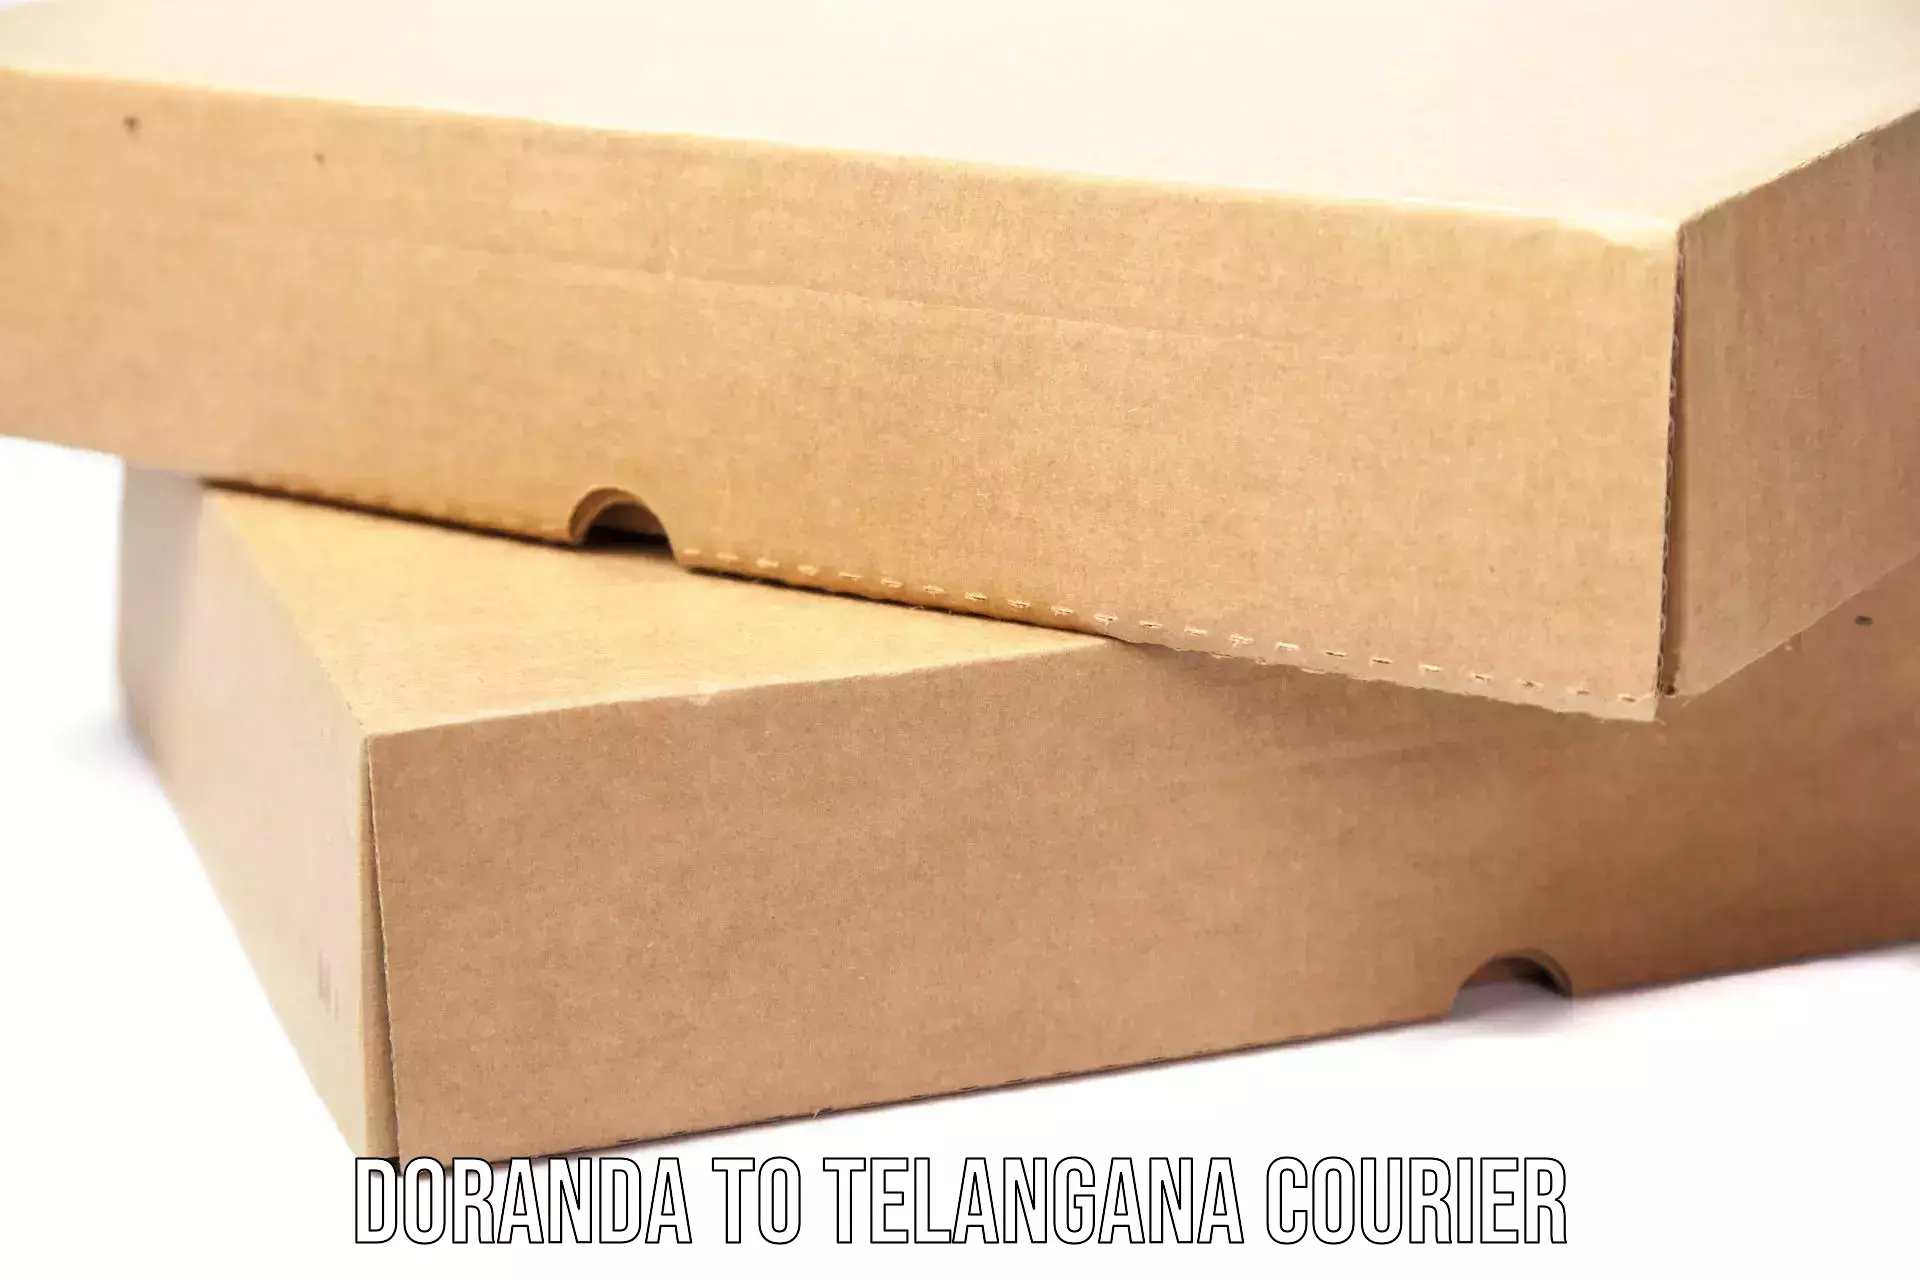 Advanced package delivery Doranda to Tallada